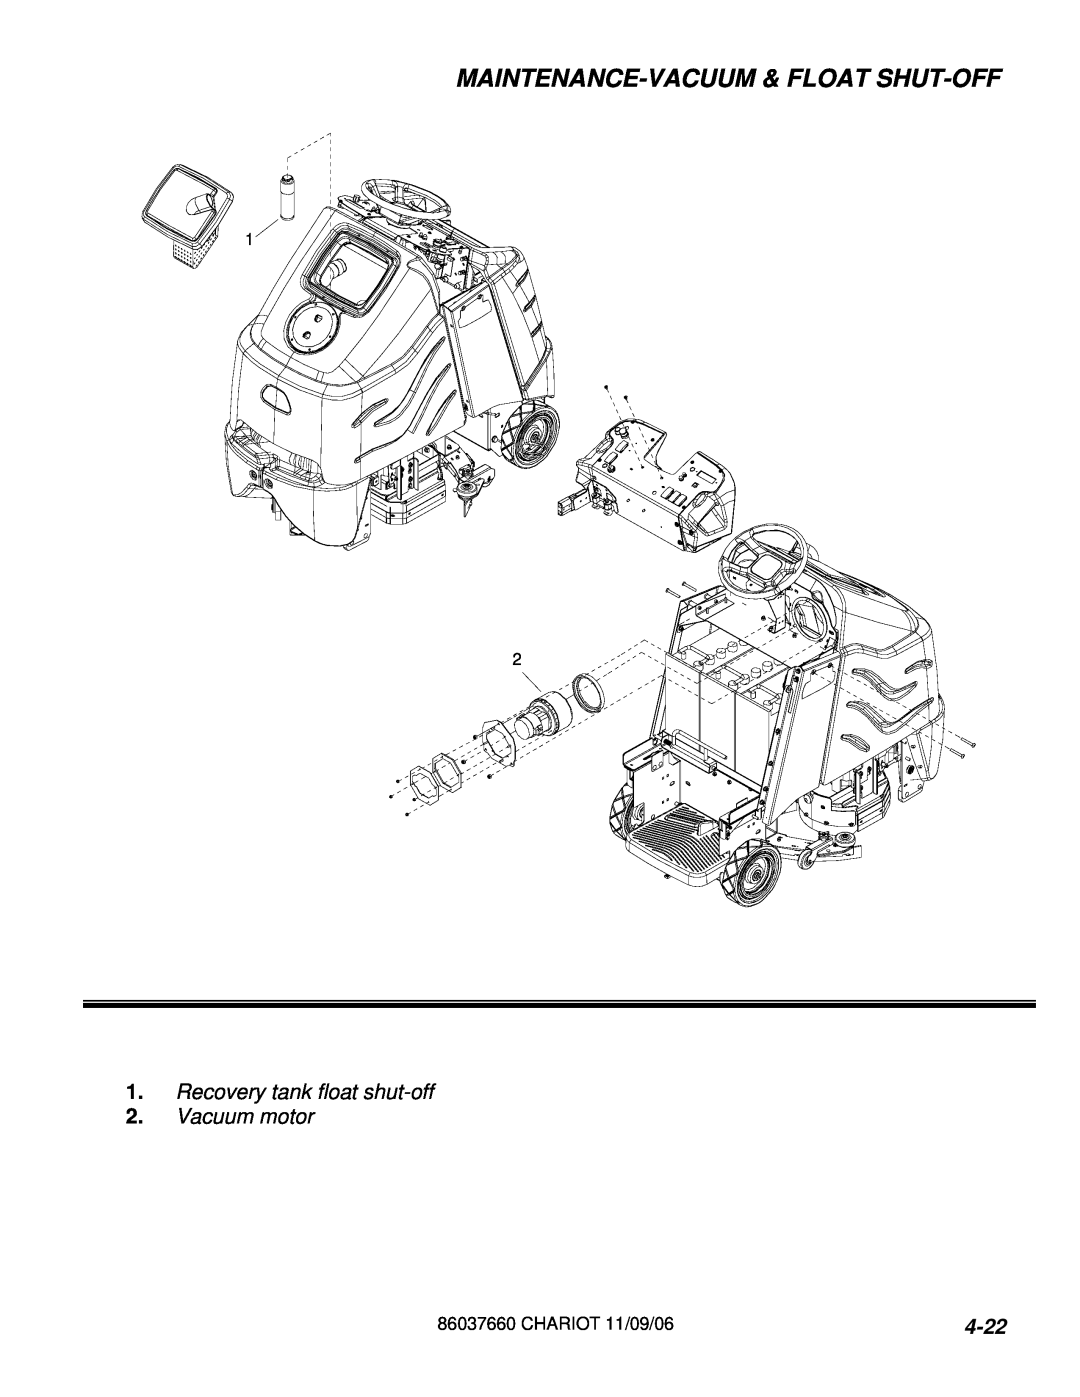 Windsor CSE24 10060250 manual Maintenance-Vacuum& Float Shut-Off, 4-22, Recovery tank float shut-off 2.Vacuum motor 